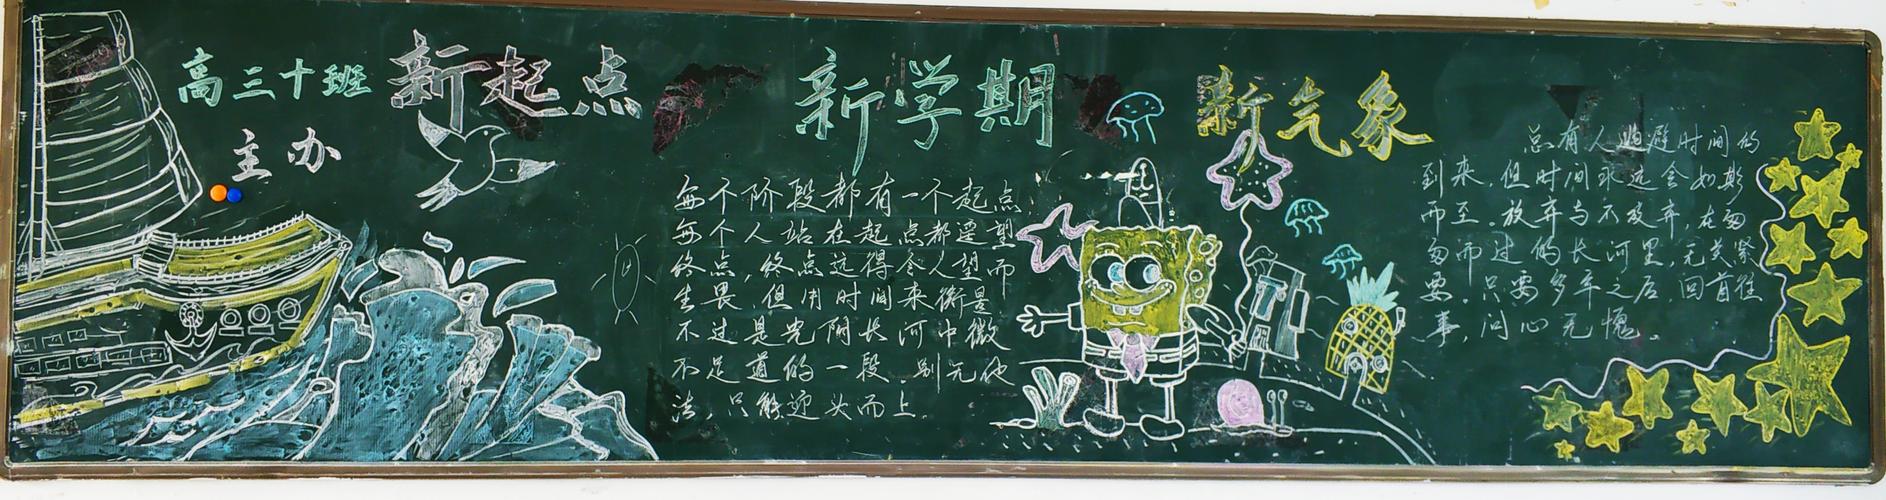 其它 汉阳一中9月黑板报评比 写美篇高三年级正处紧张复习备考的关键